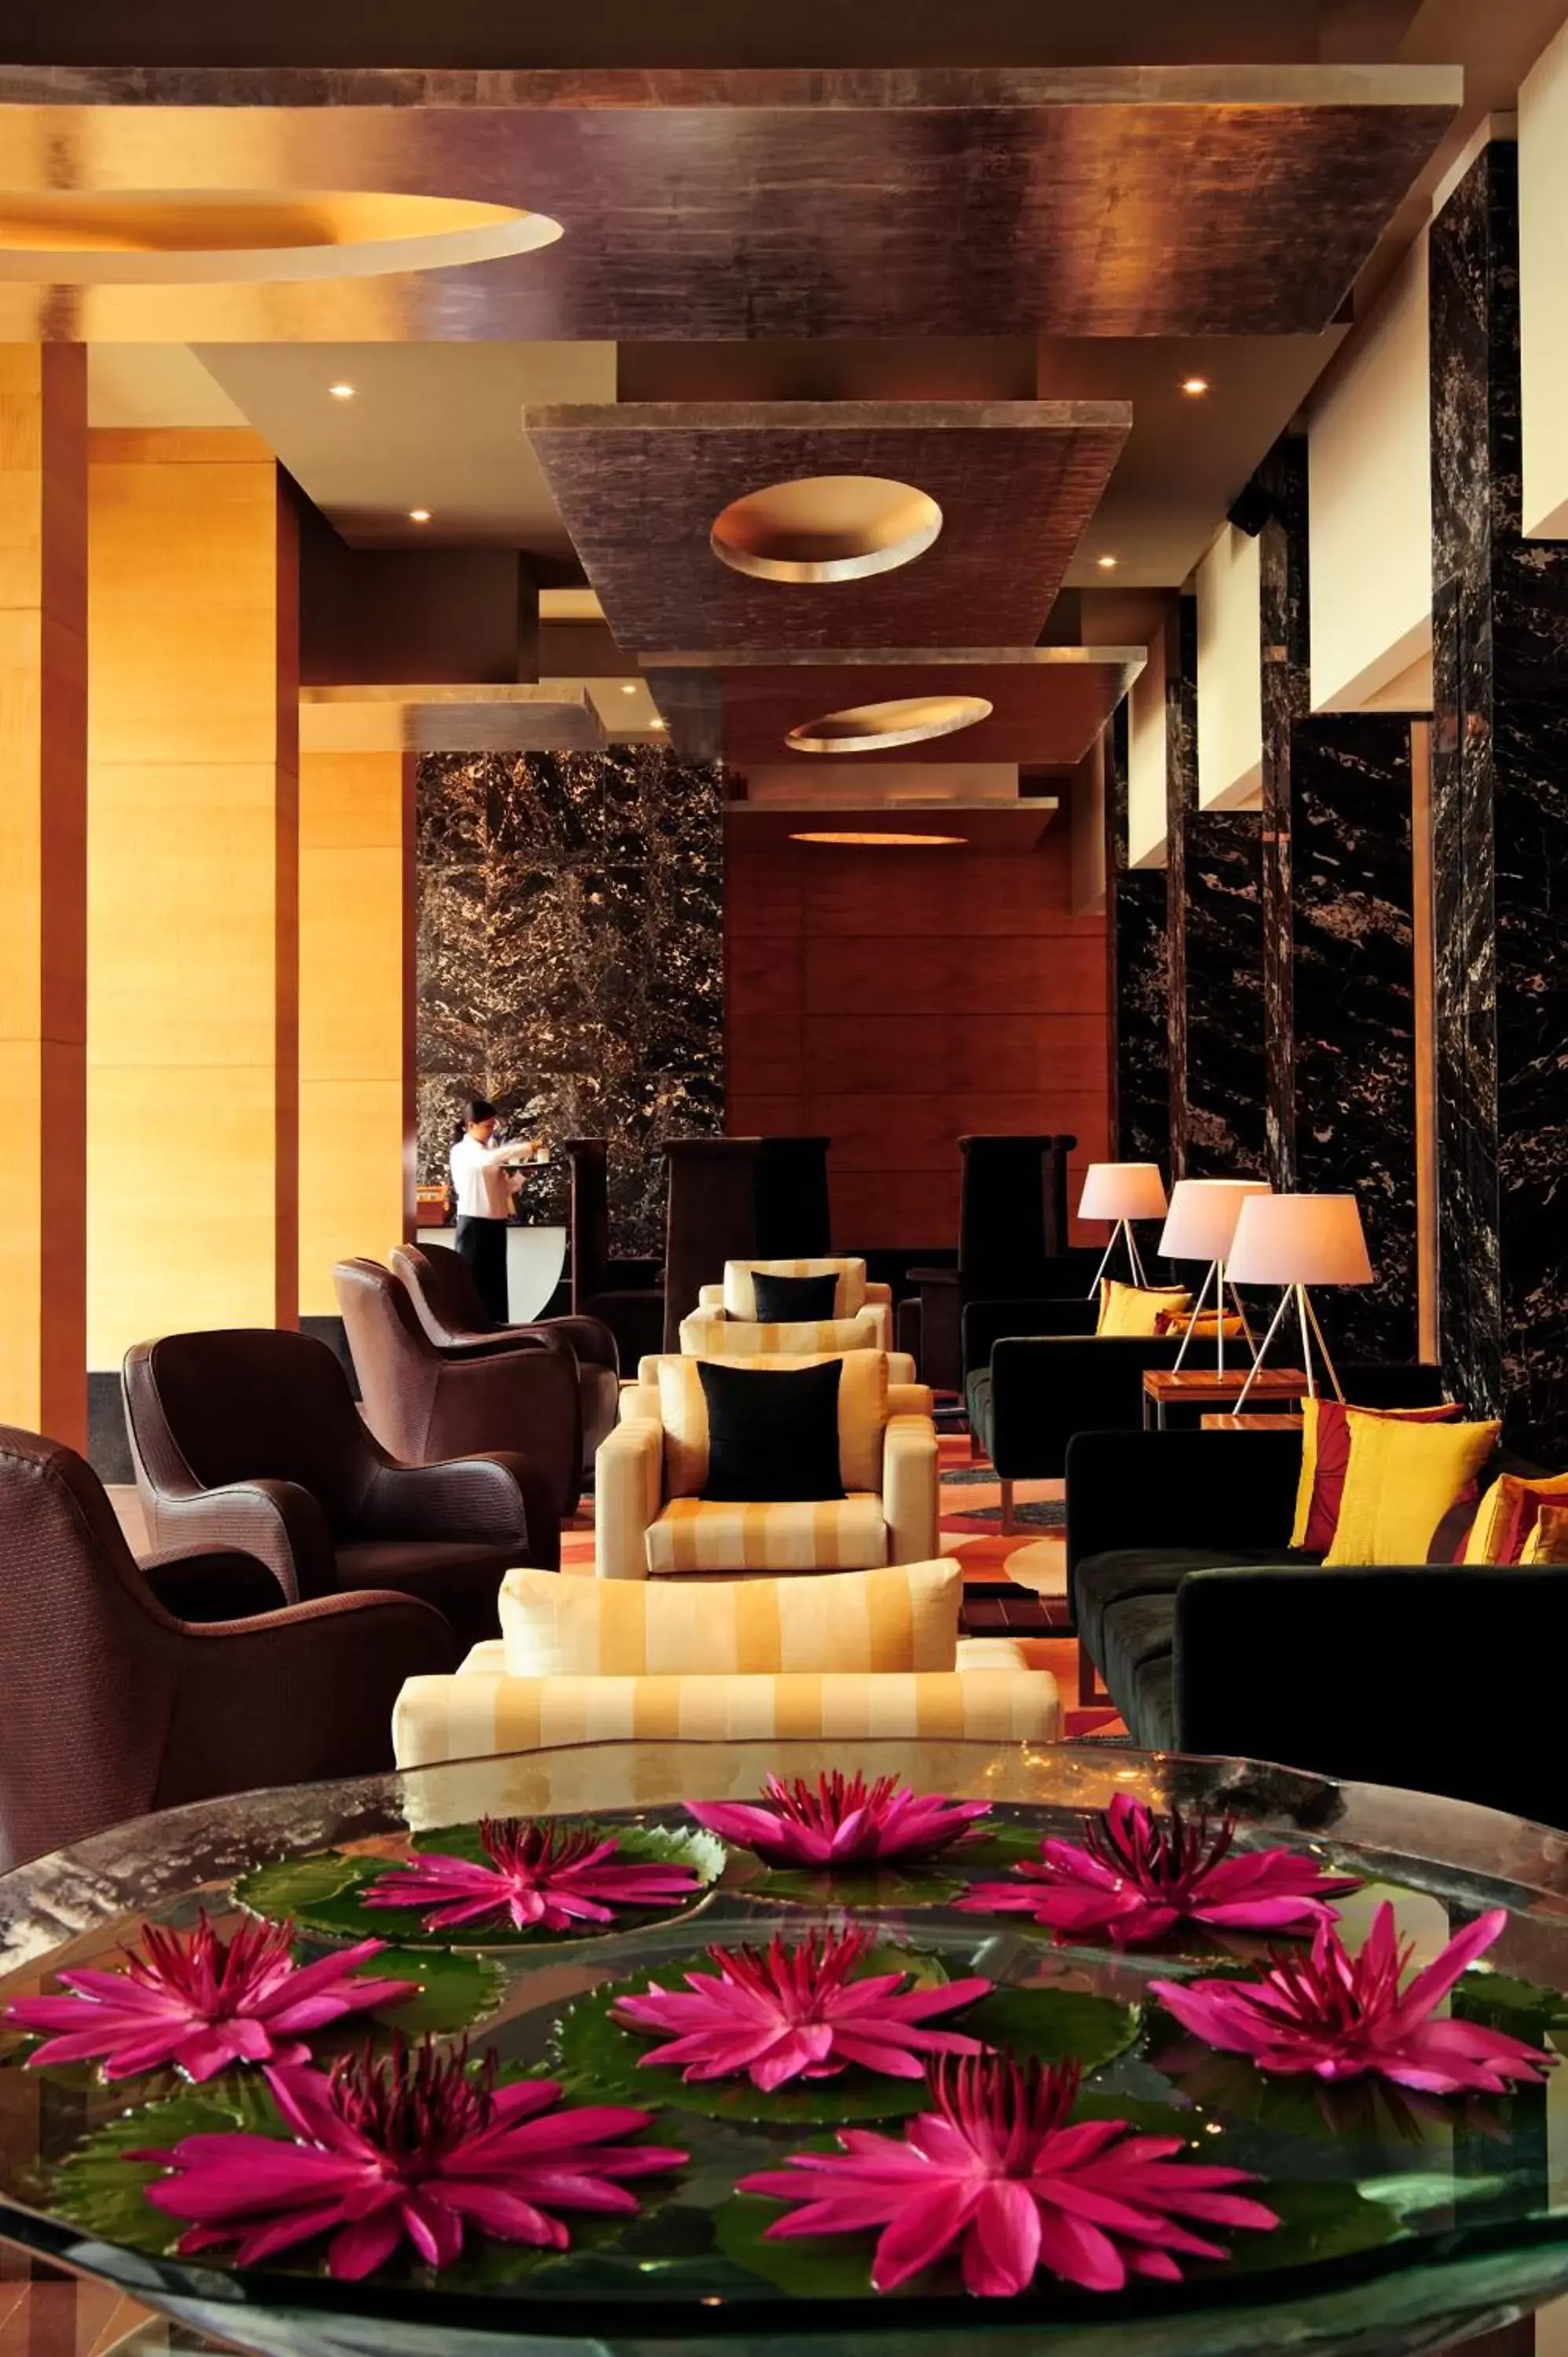 Lobby or reception in Taj Club House